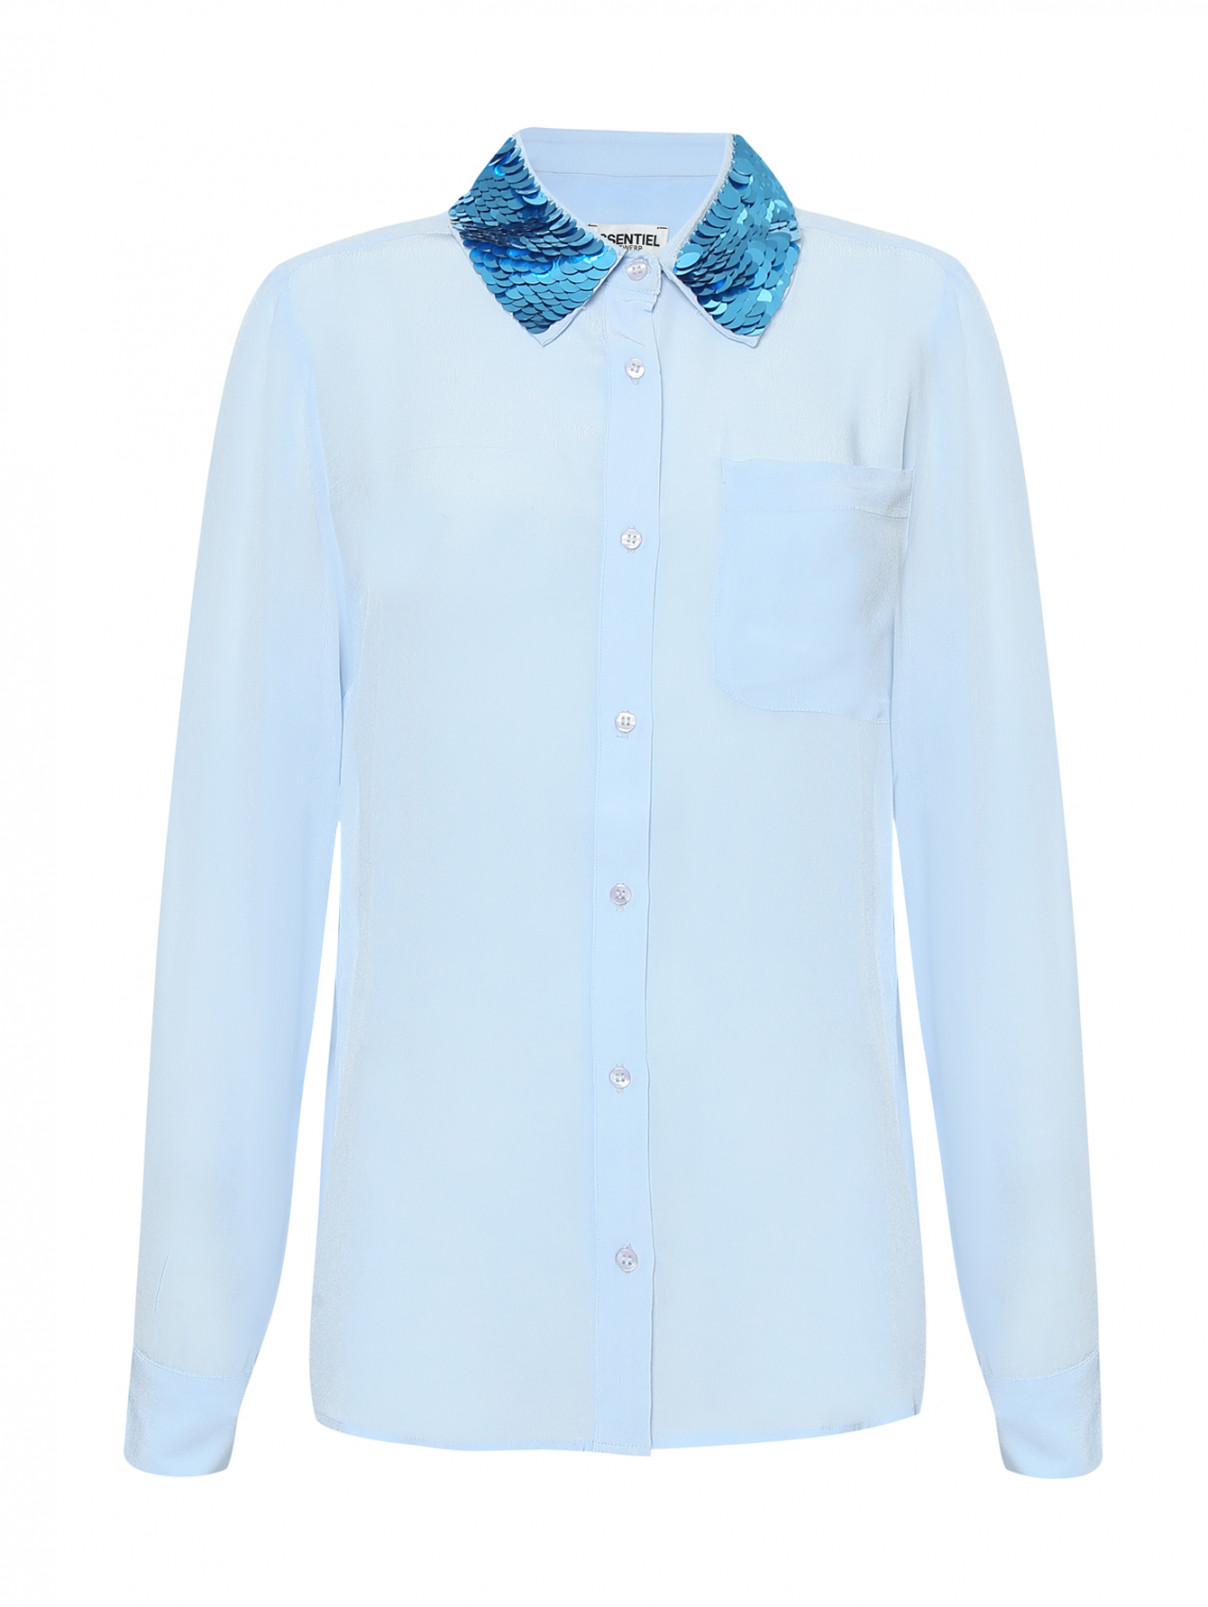 Рубашка из хлопка, с вышивкой пайетками по воротнику Essentiel Antwerp  –  Общий вид  – Цвет:  Синий